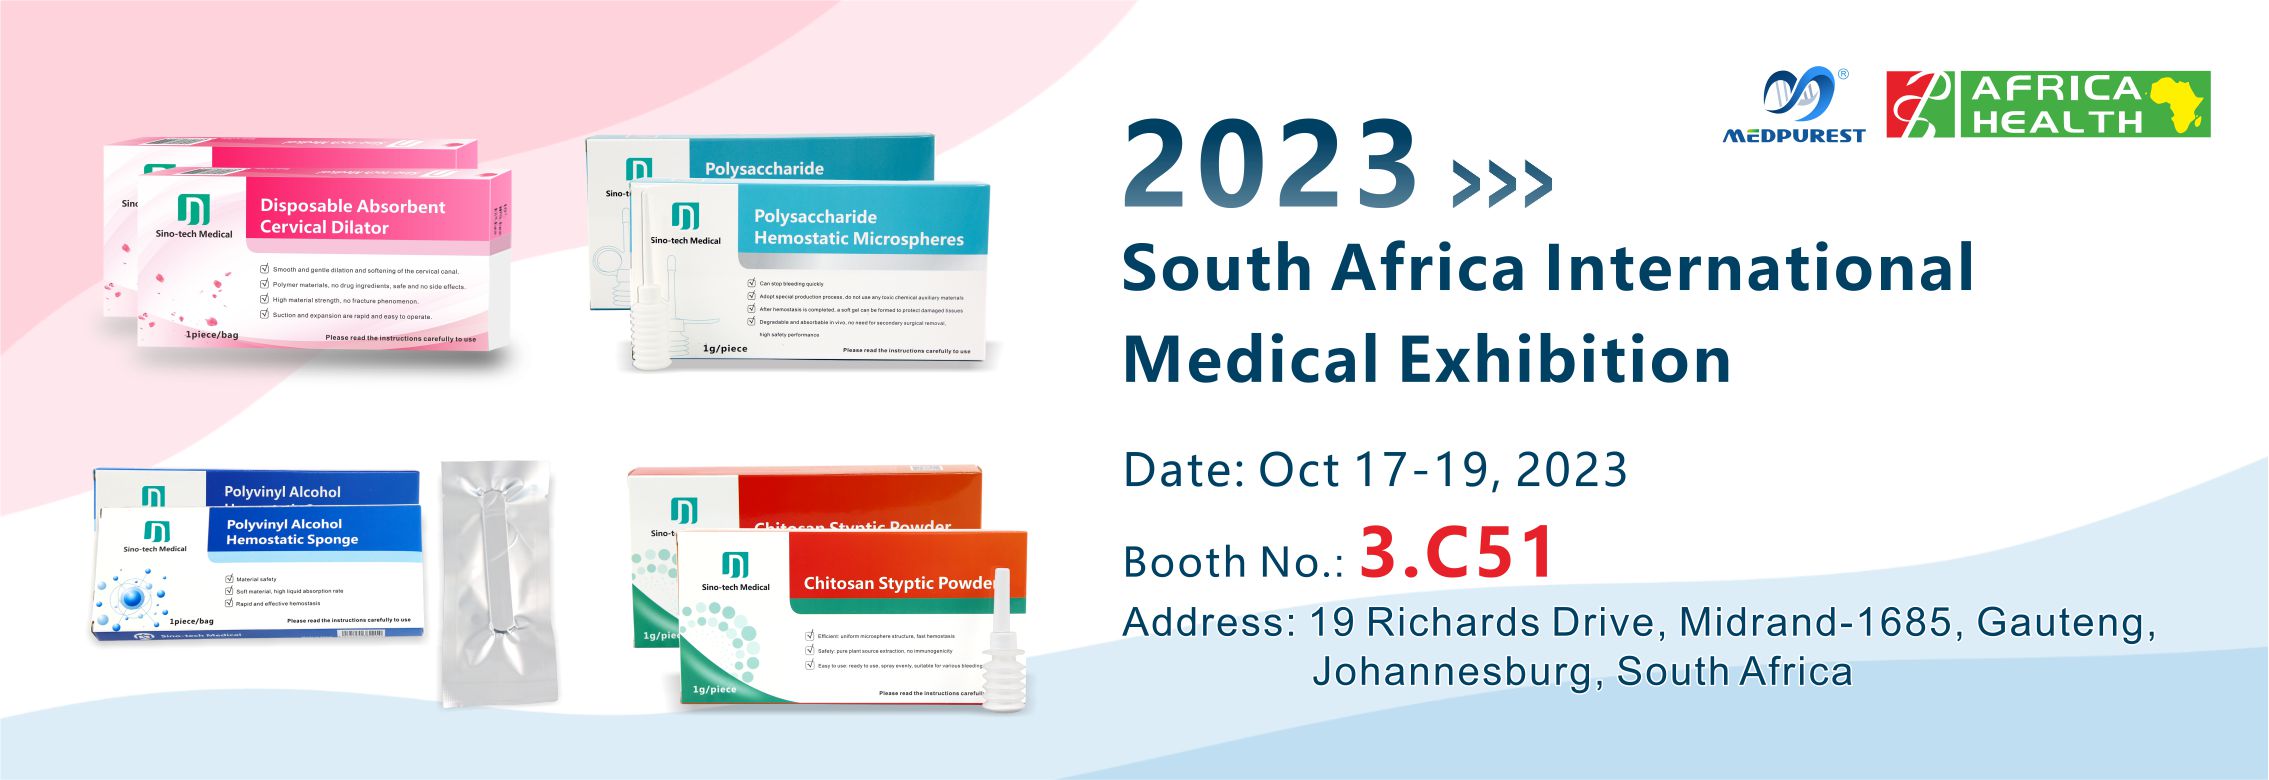 المعرض الطبي جنوب أفريقيا